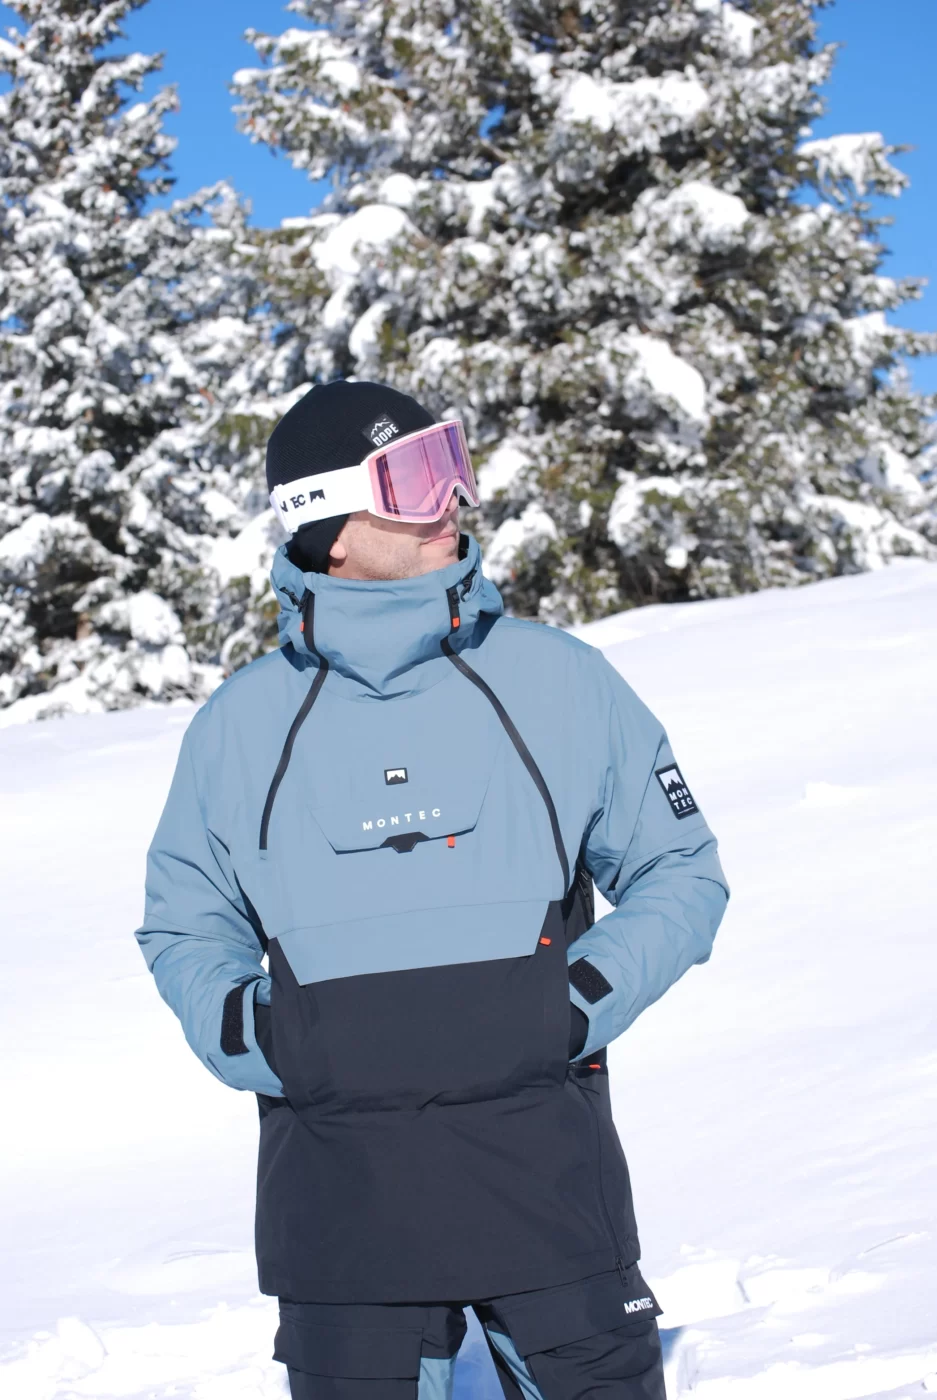 Skieur portant une veste de ski et un masque de ski regardant au loin